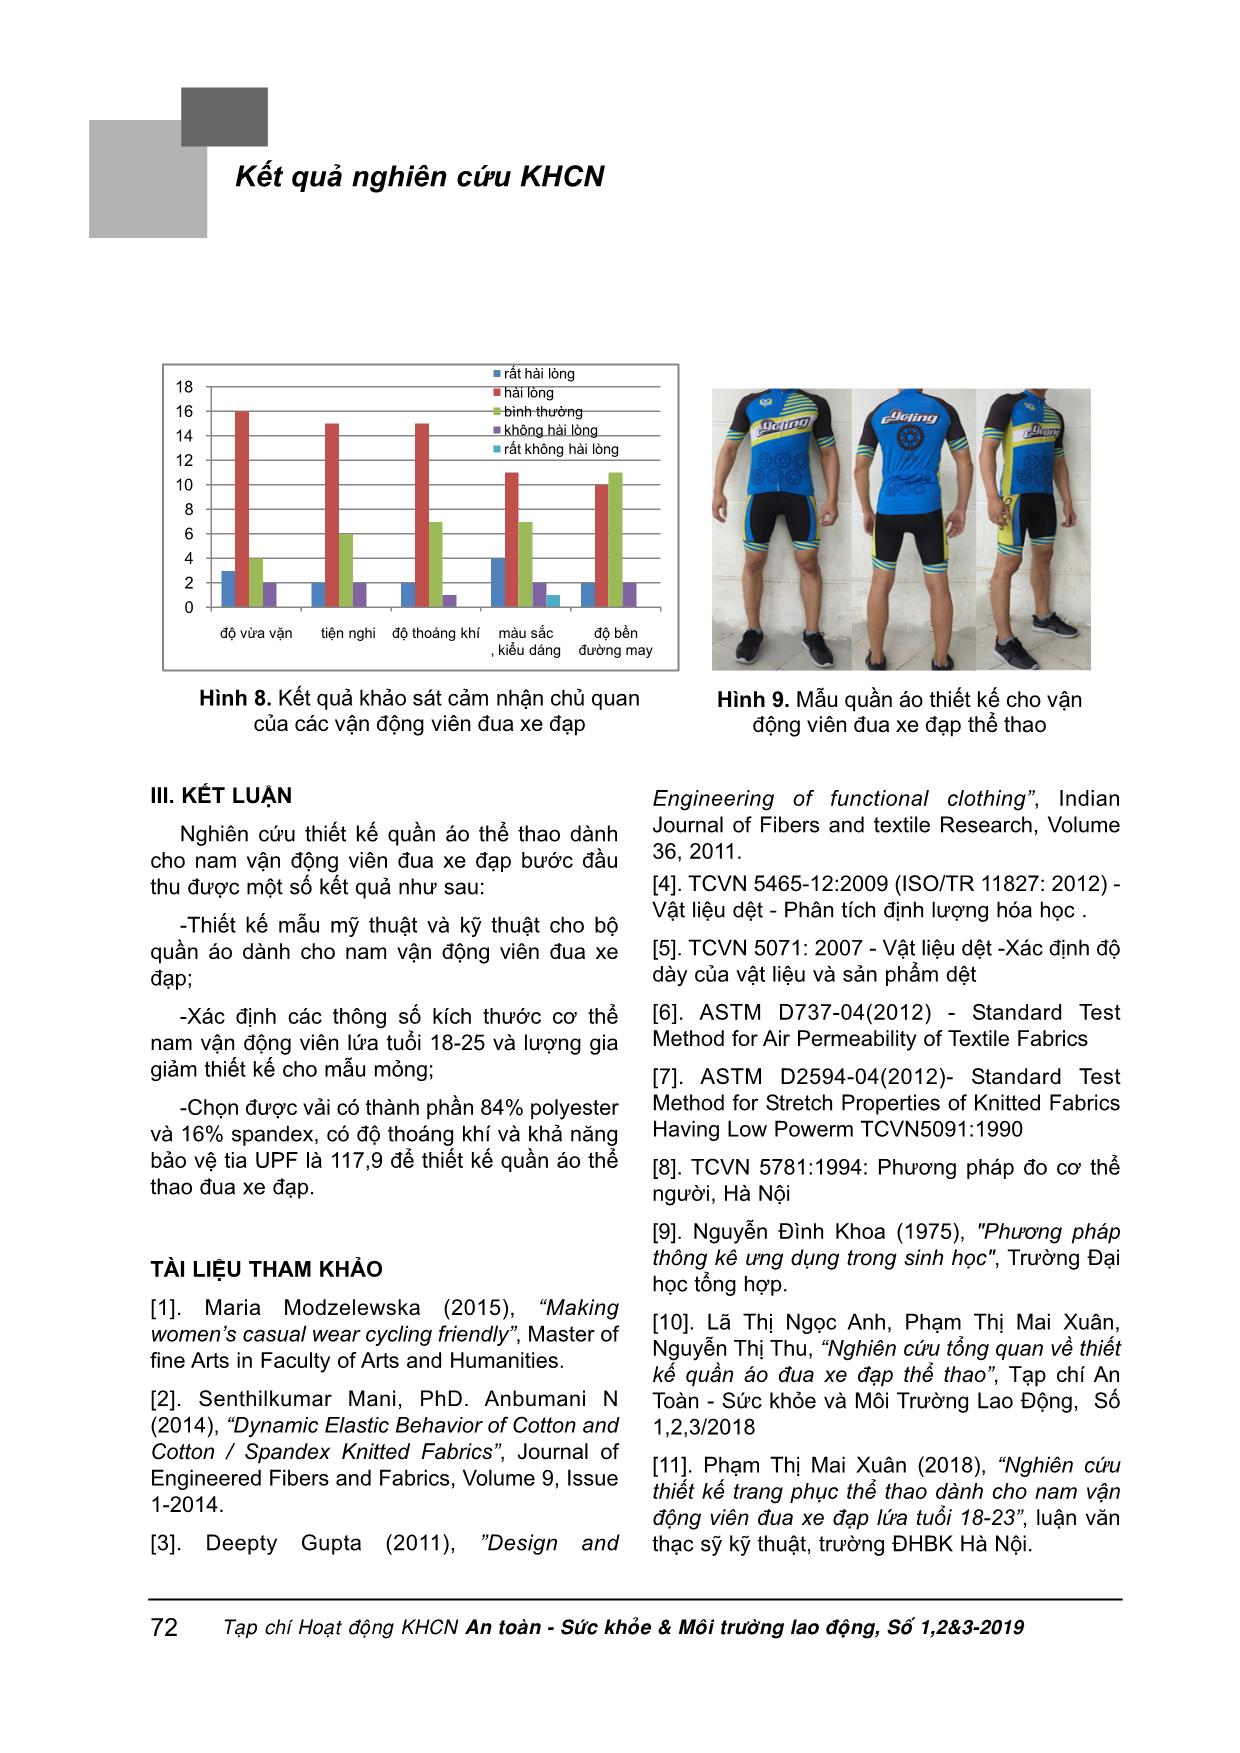 Nghiên cứu thiết kế quần áo cho nam vận động viên đua xe đạp lứa tuổi từ 18-25 trang 8